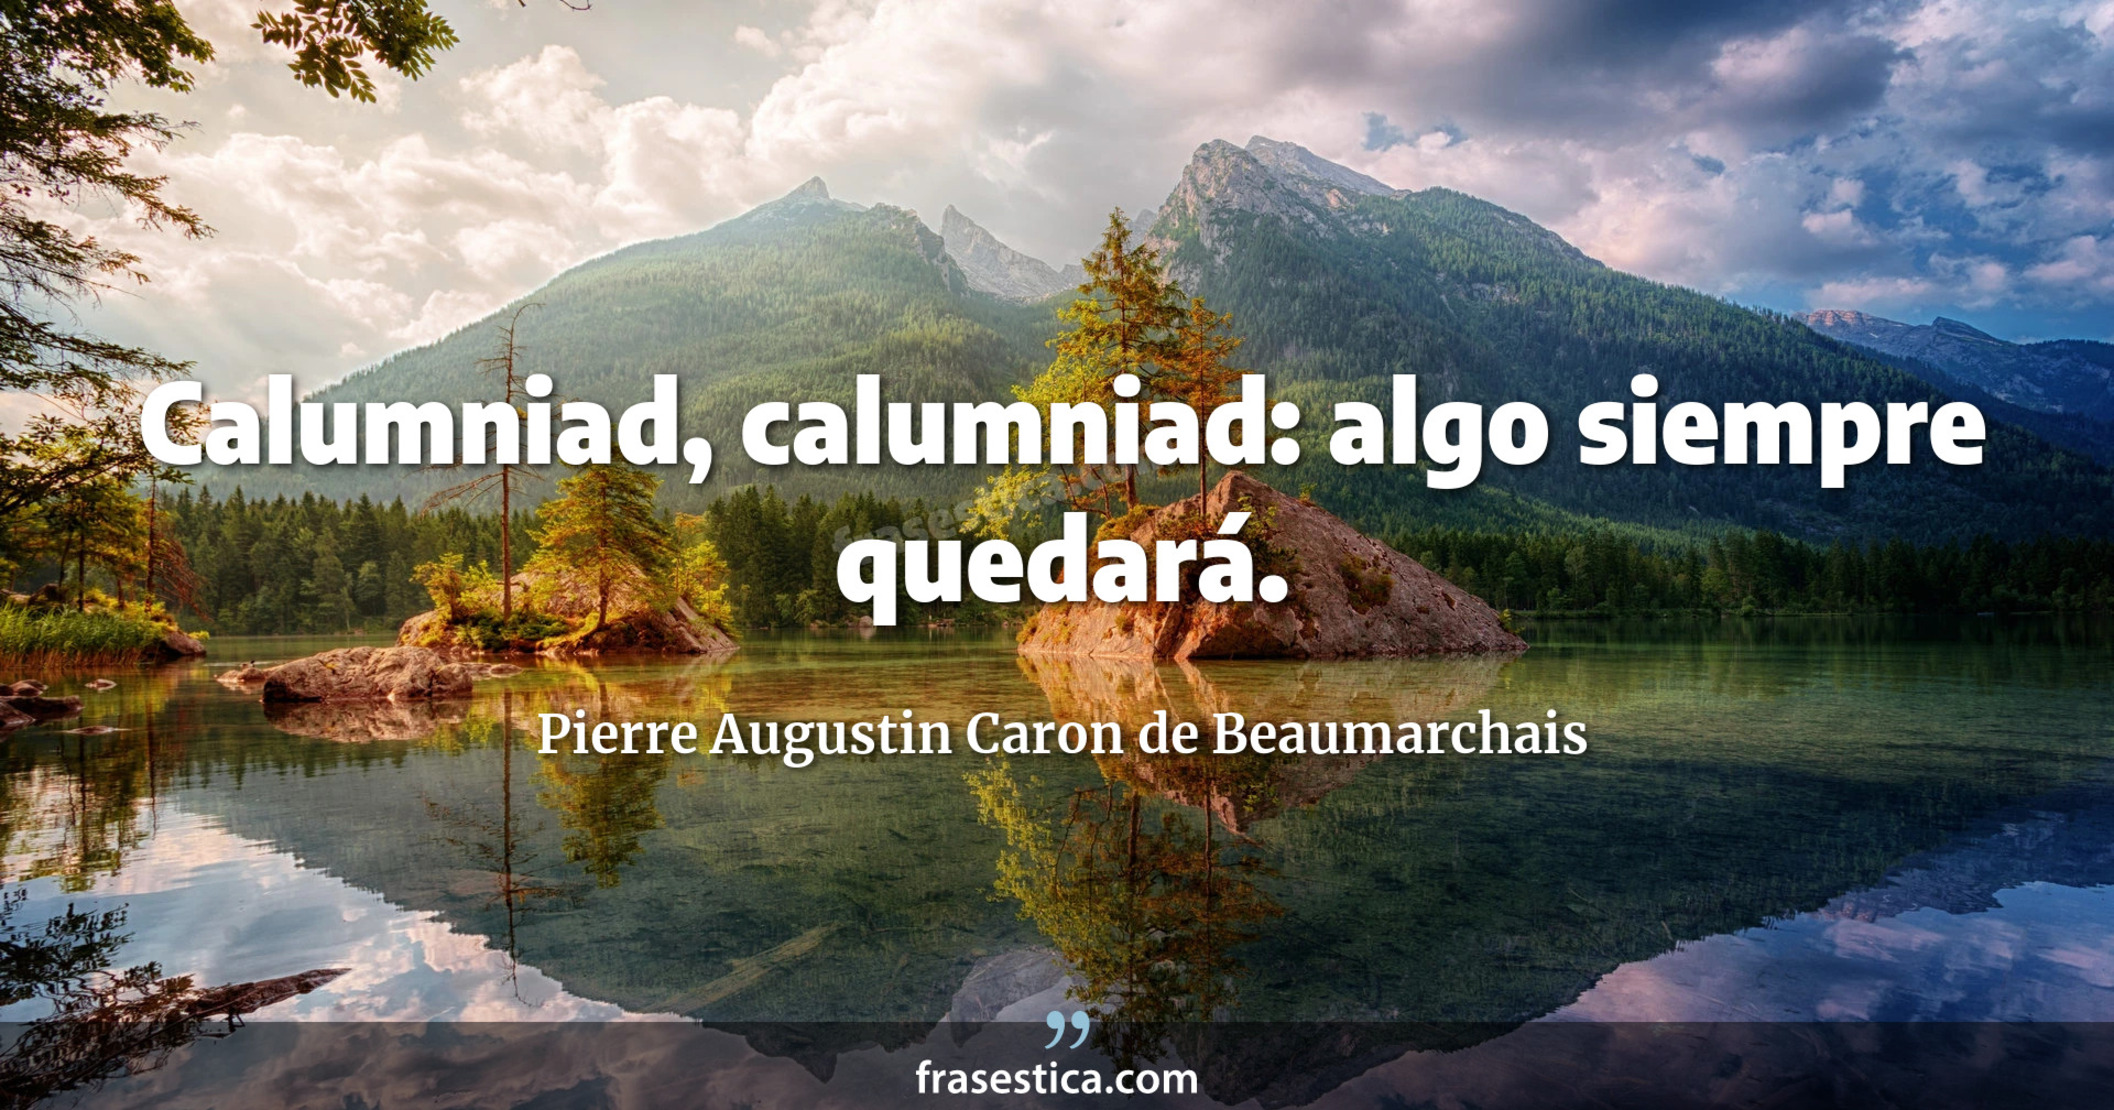 Calumniad, calumniad: algo siempre quedará. - Pierre Augustin Caron de Beaumarchais